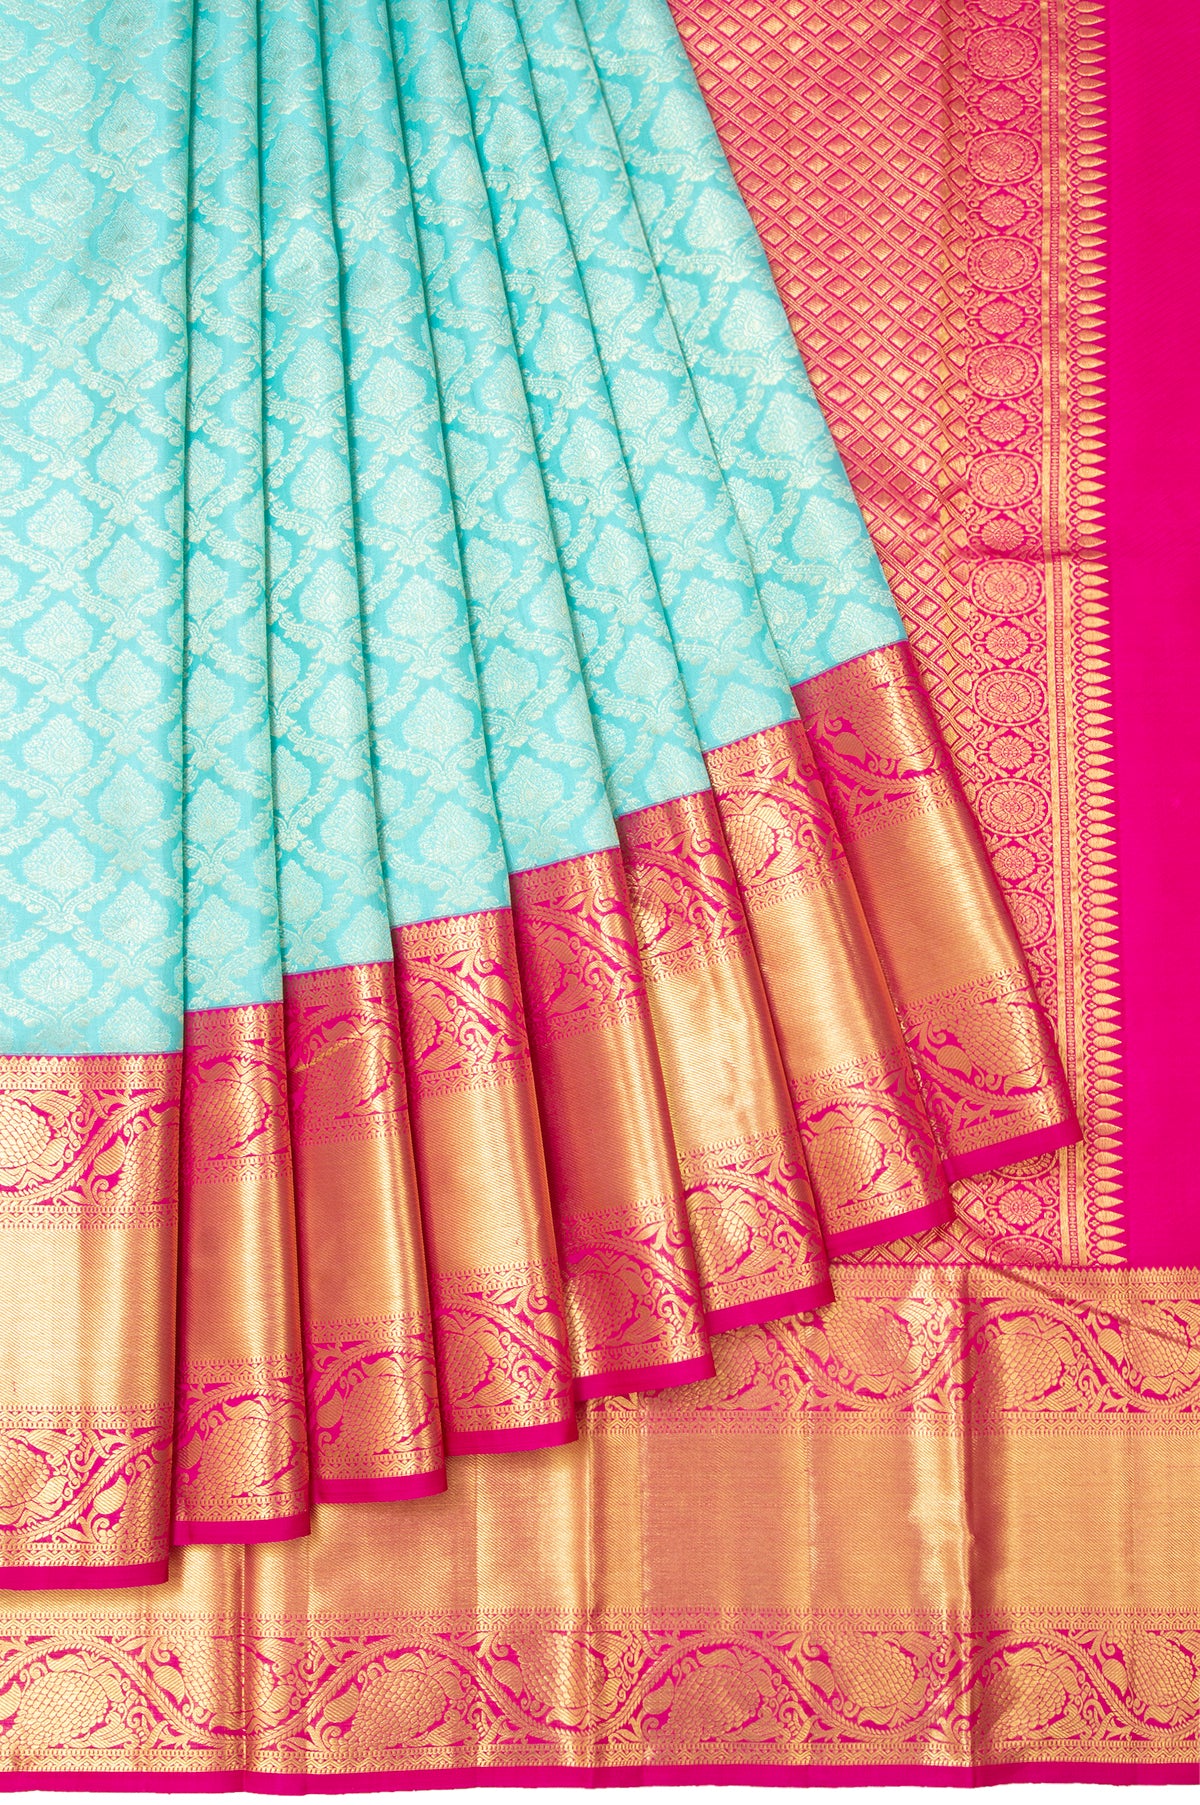 Uppada Pattu Sarees Silk Saree Big Border Saree Free Shipping Pattu Saree  With Running Blouse Indian Gift Wedding Saree Women Bridal Saree - Etsy  Norway